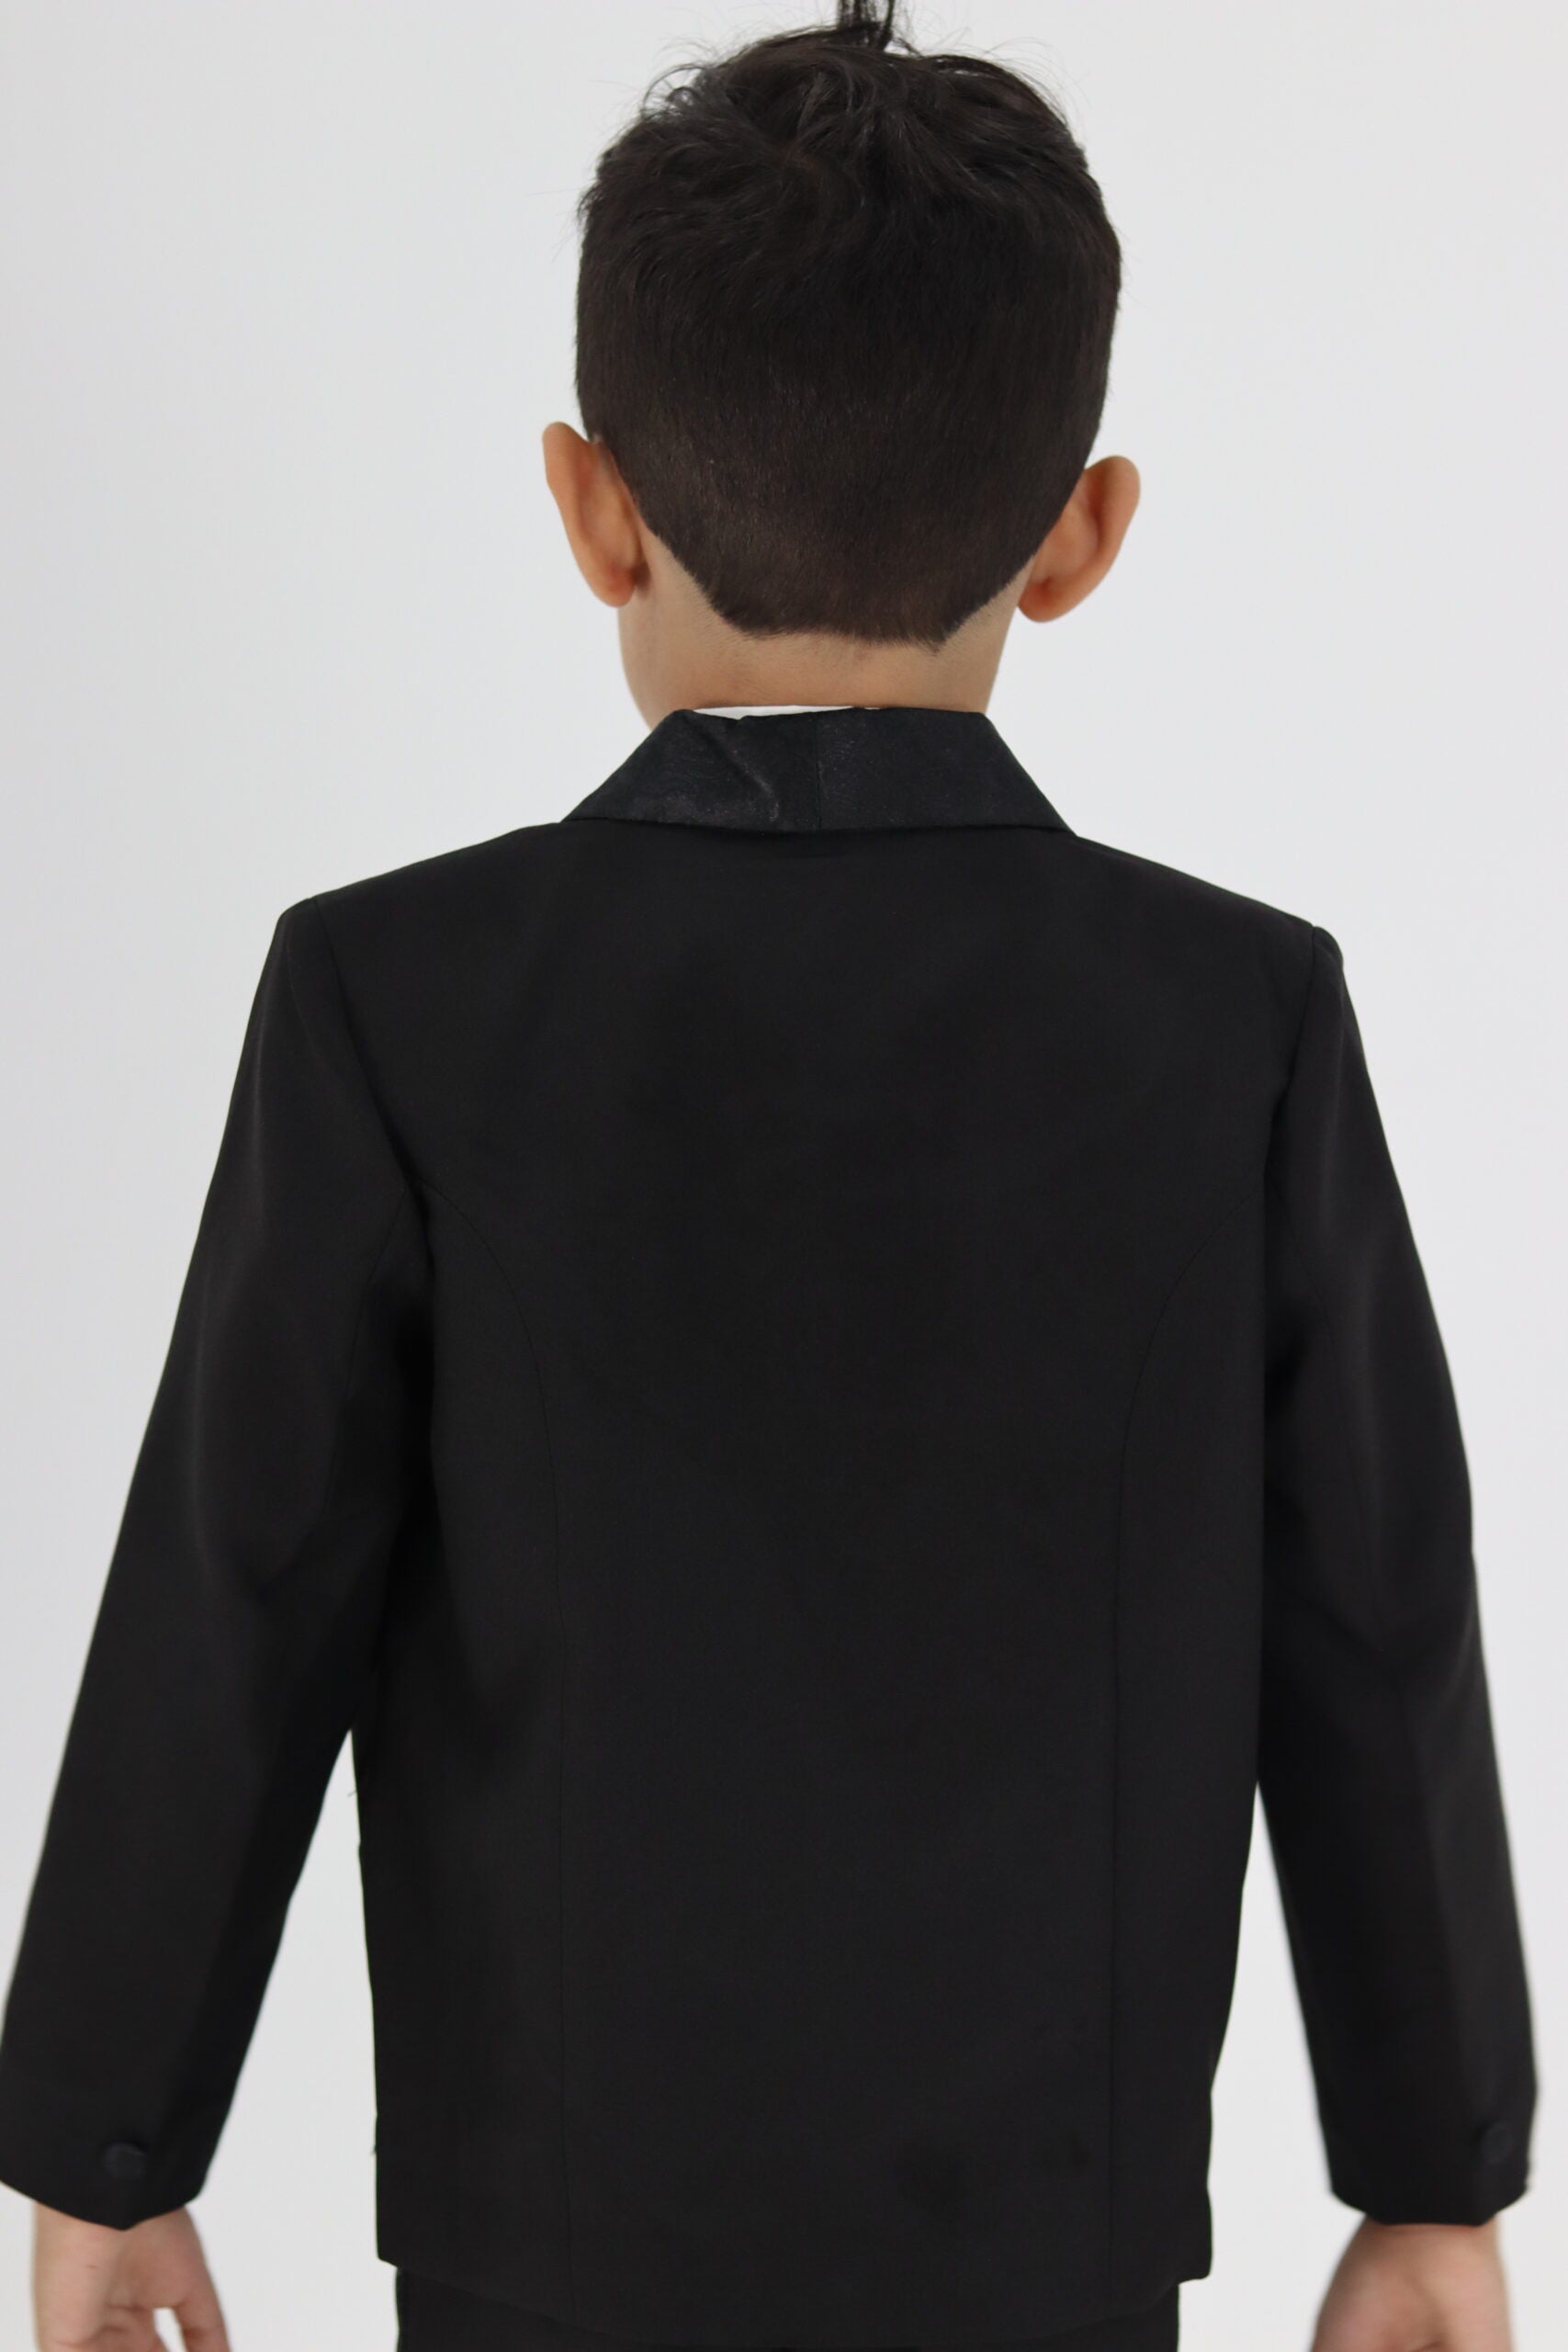 Boy Tuxedo Black Suit 5pc Set